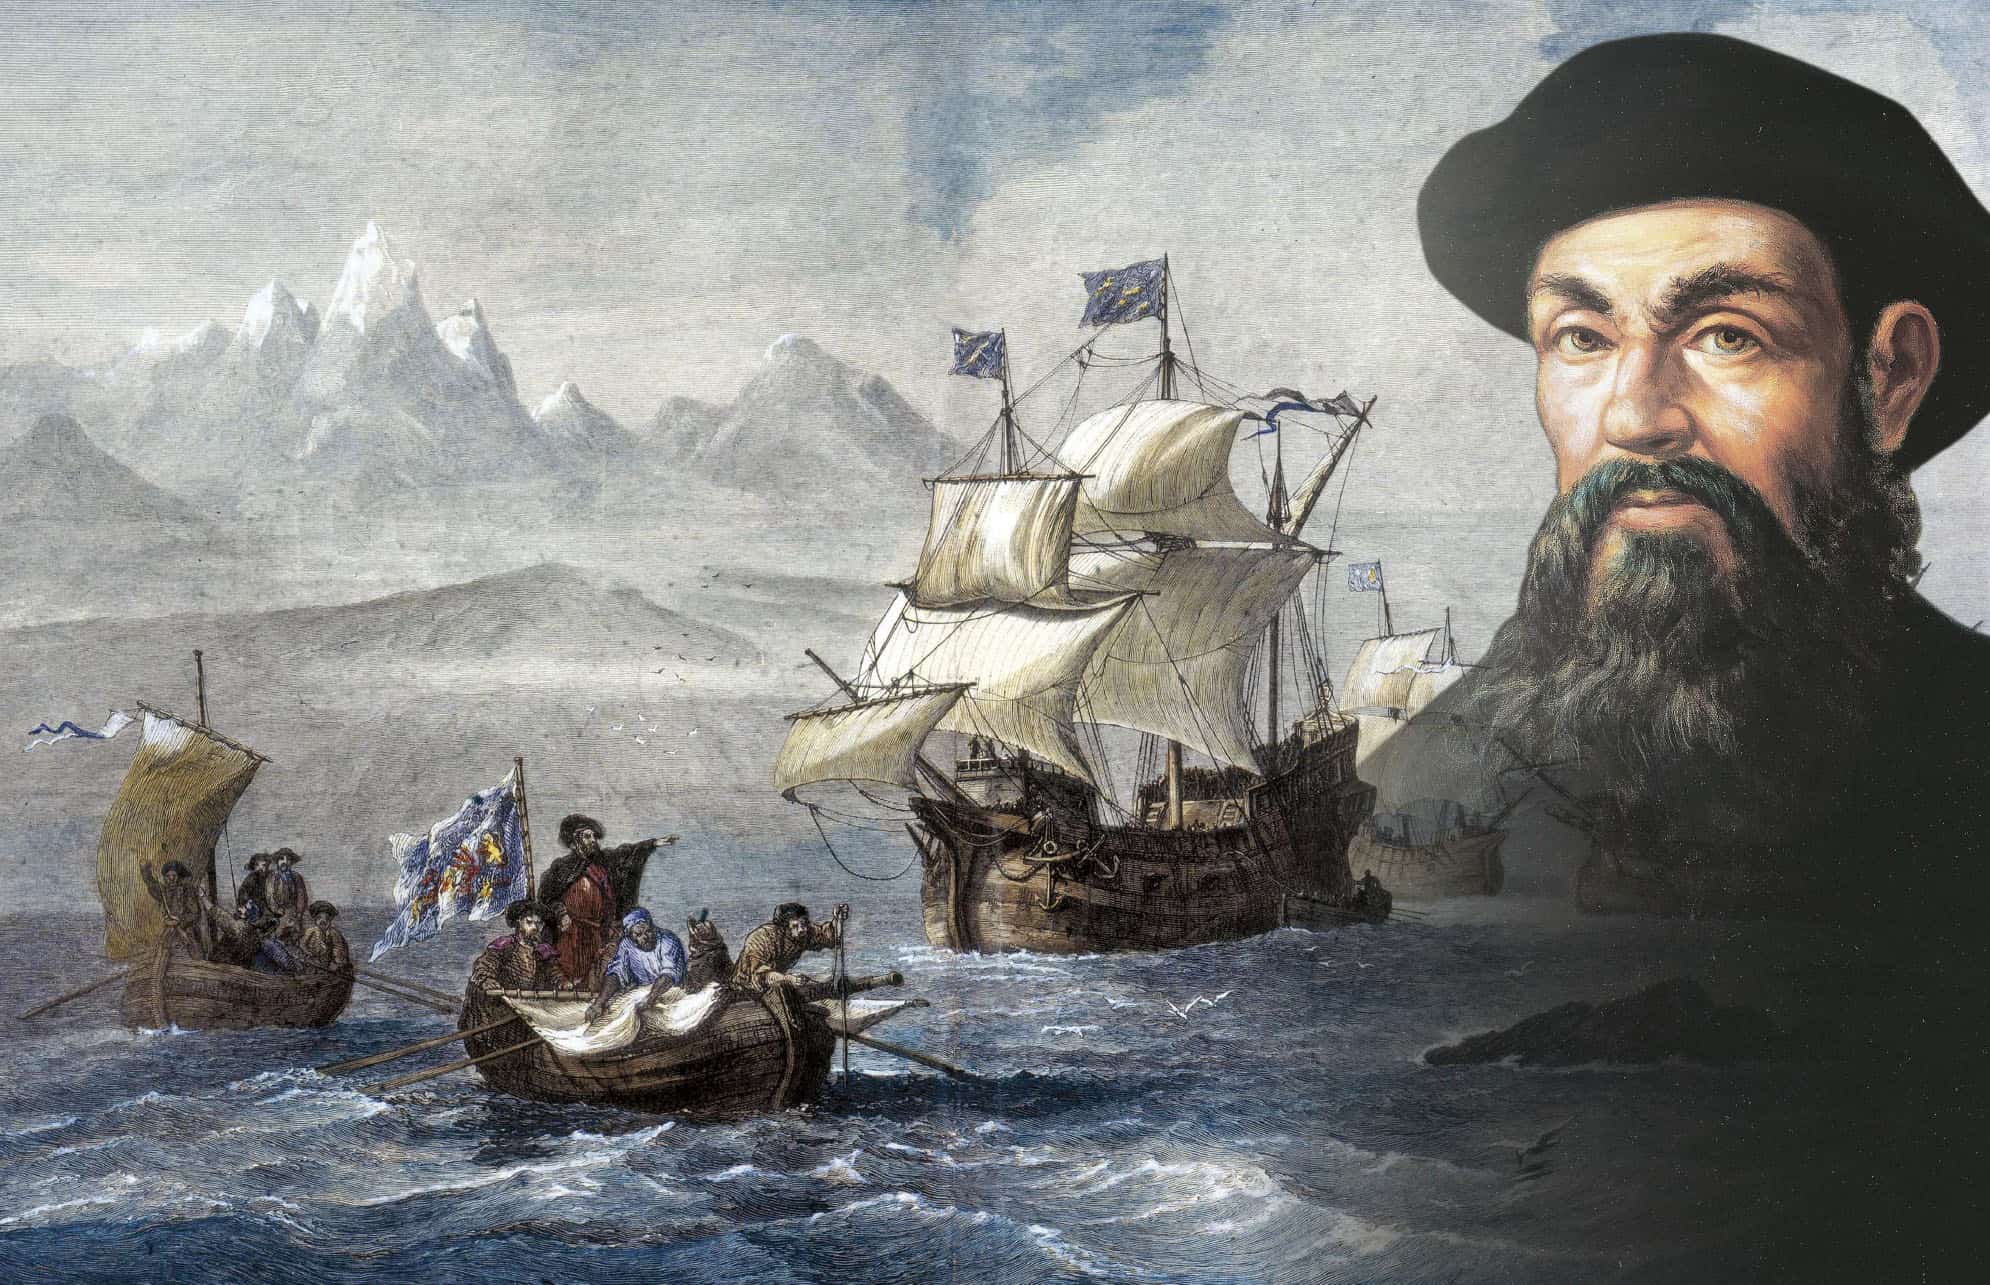 first scientific voyage